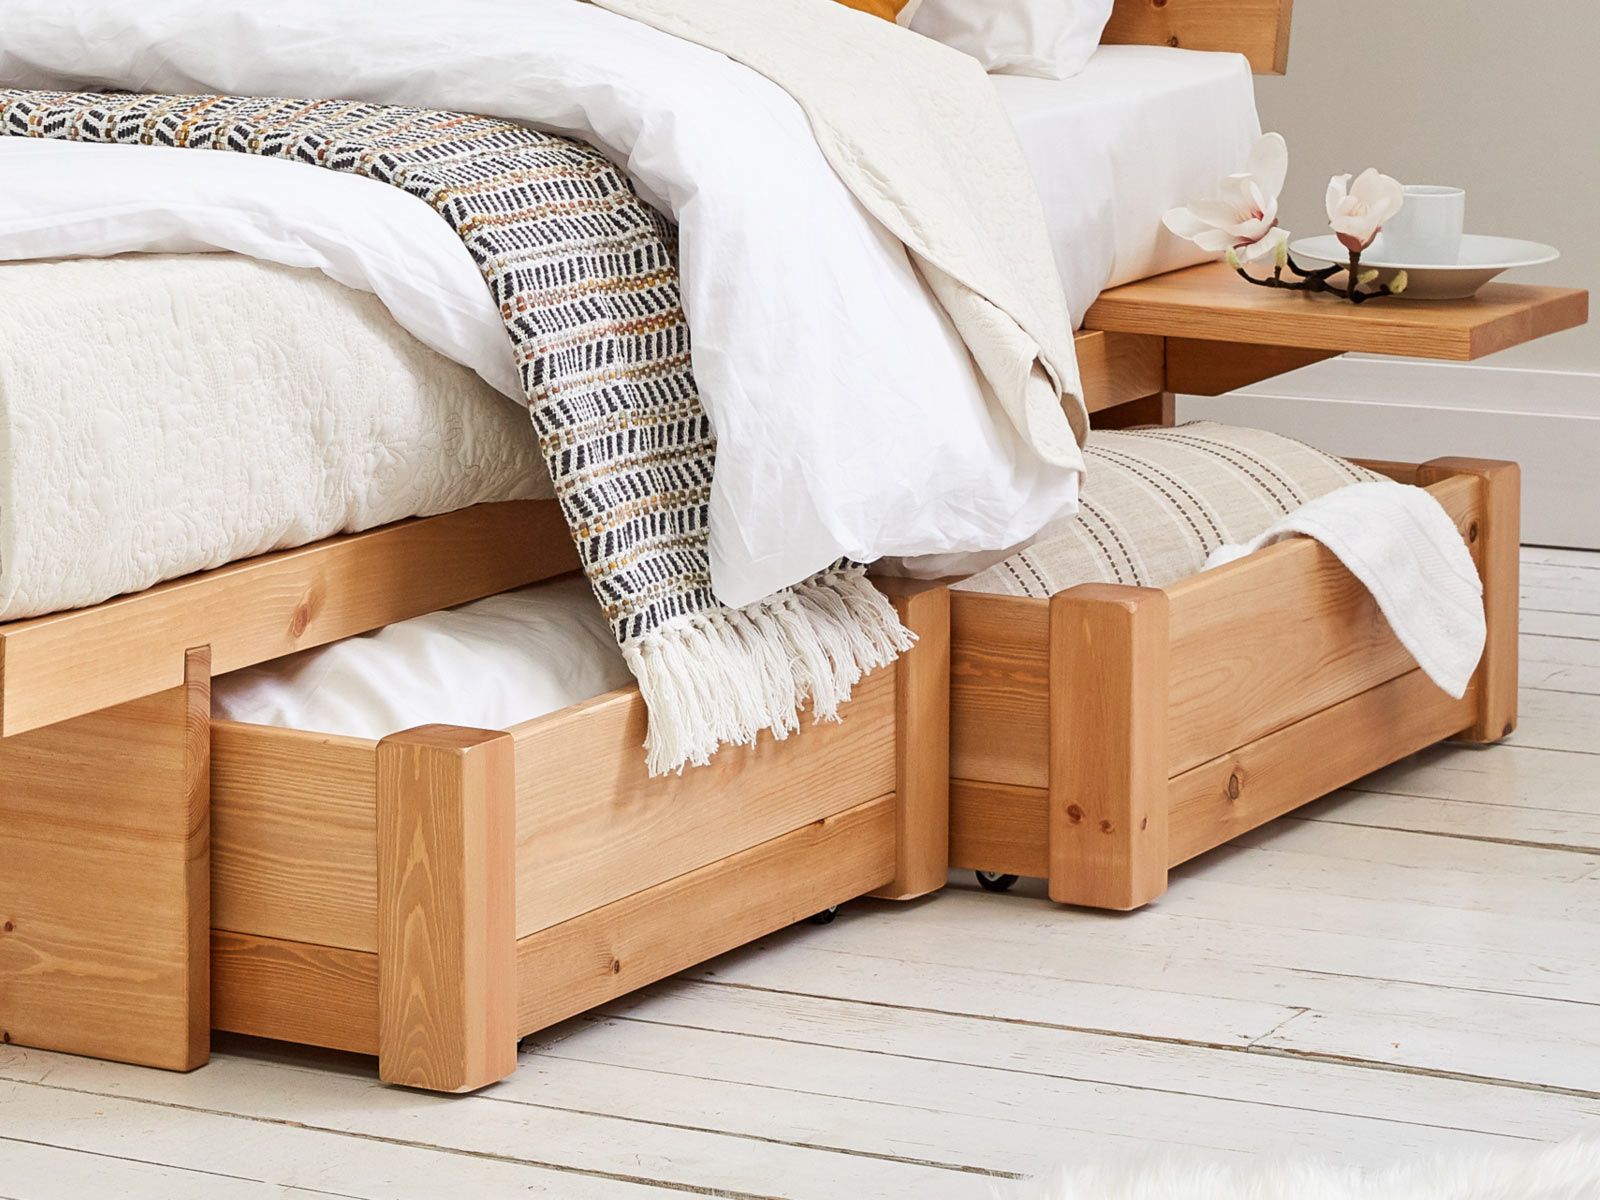 Hãy tận dụng ngay khu vực dưới gầm giường để bổ sung cho nó những chiếc hộc lưu trữ bằng gỗ gọn gàng, xinh xắn cho phòng ngủ luôn ngăn nắp.